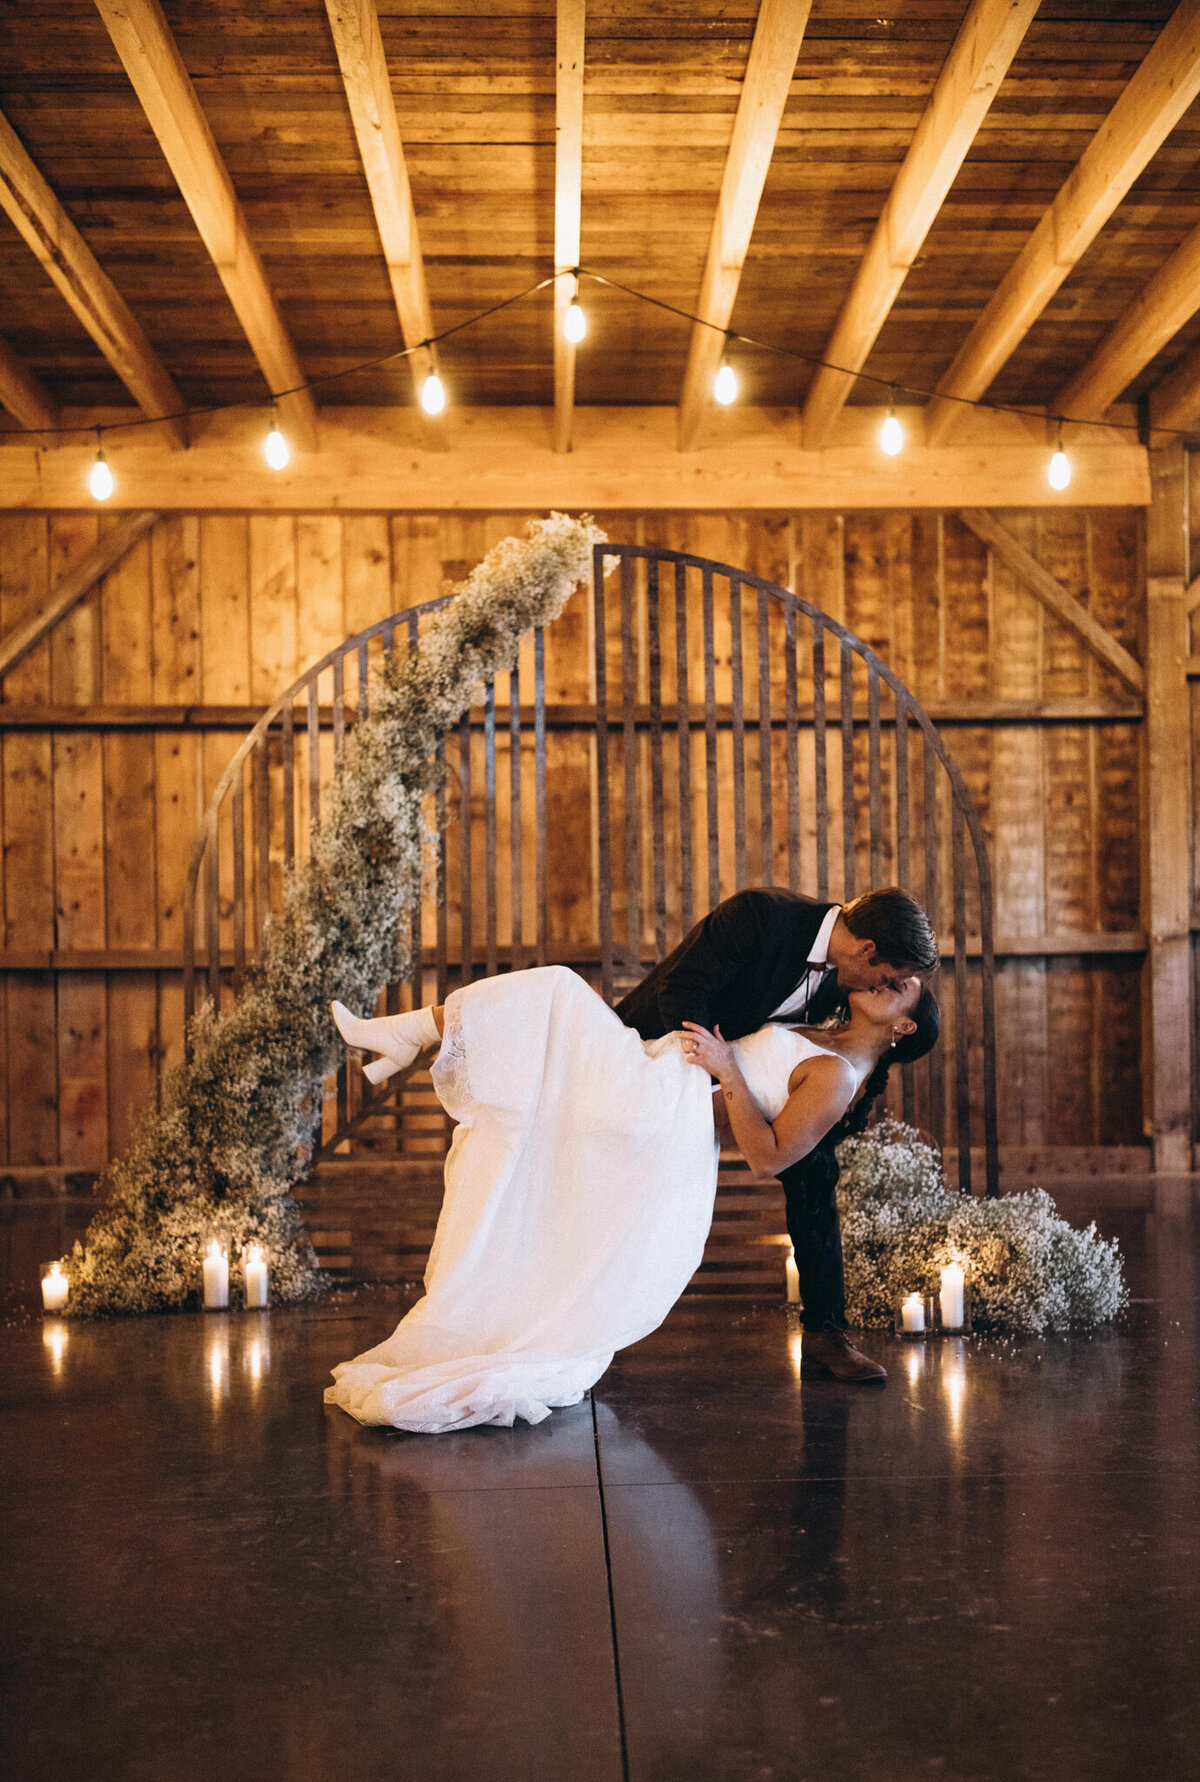 Indoor moody wedding ceremony at Countryside Barn, rustic, country Lethbridge, Alberta wedding venue, featured on the Brontë Bride Vendor Guide.